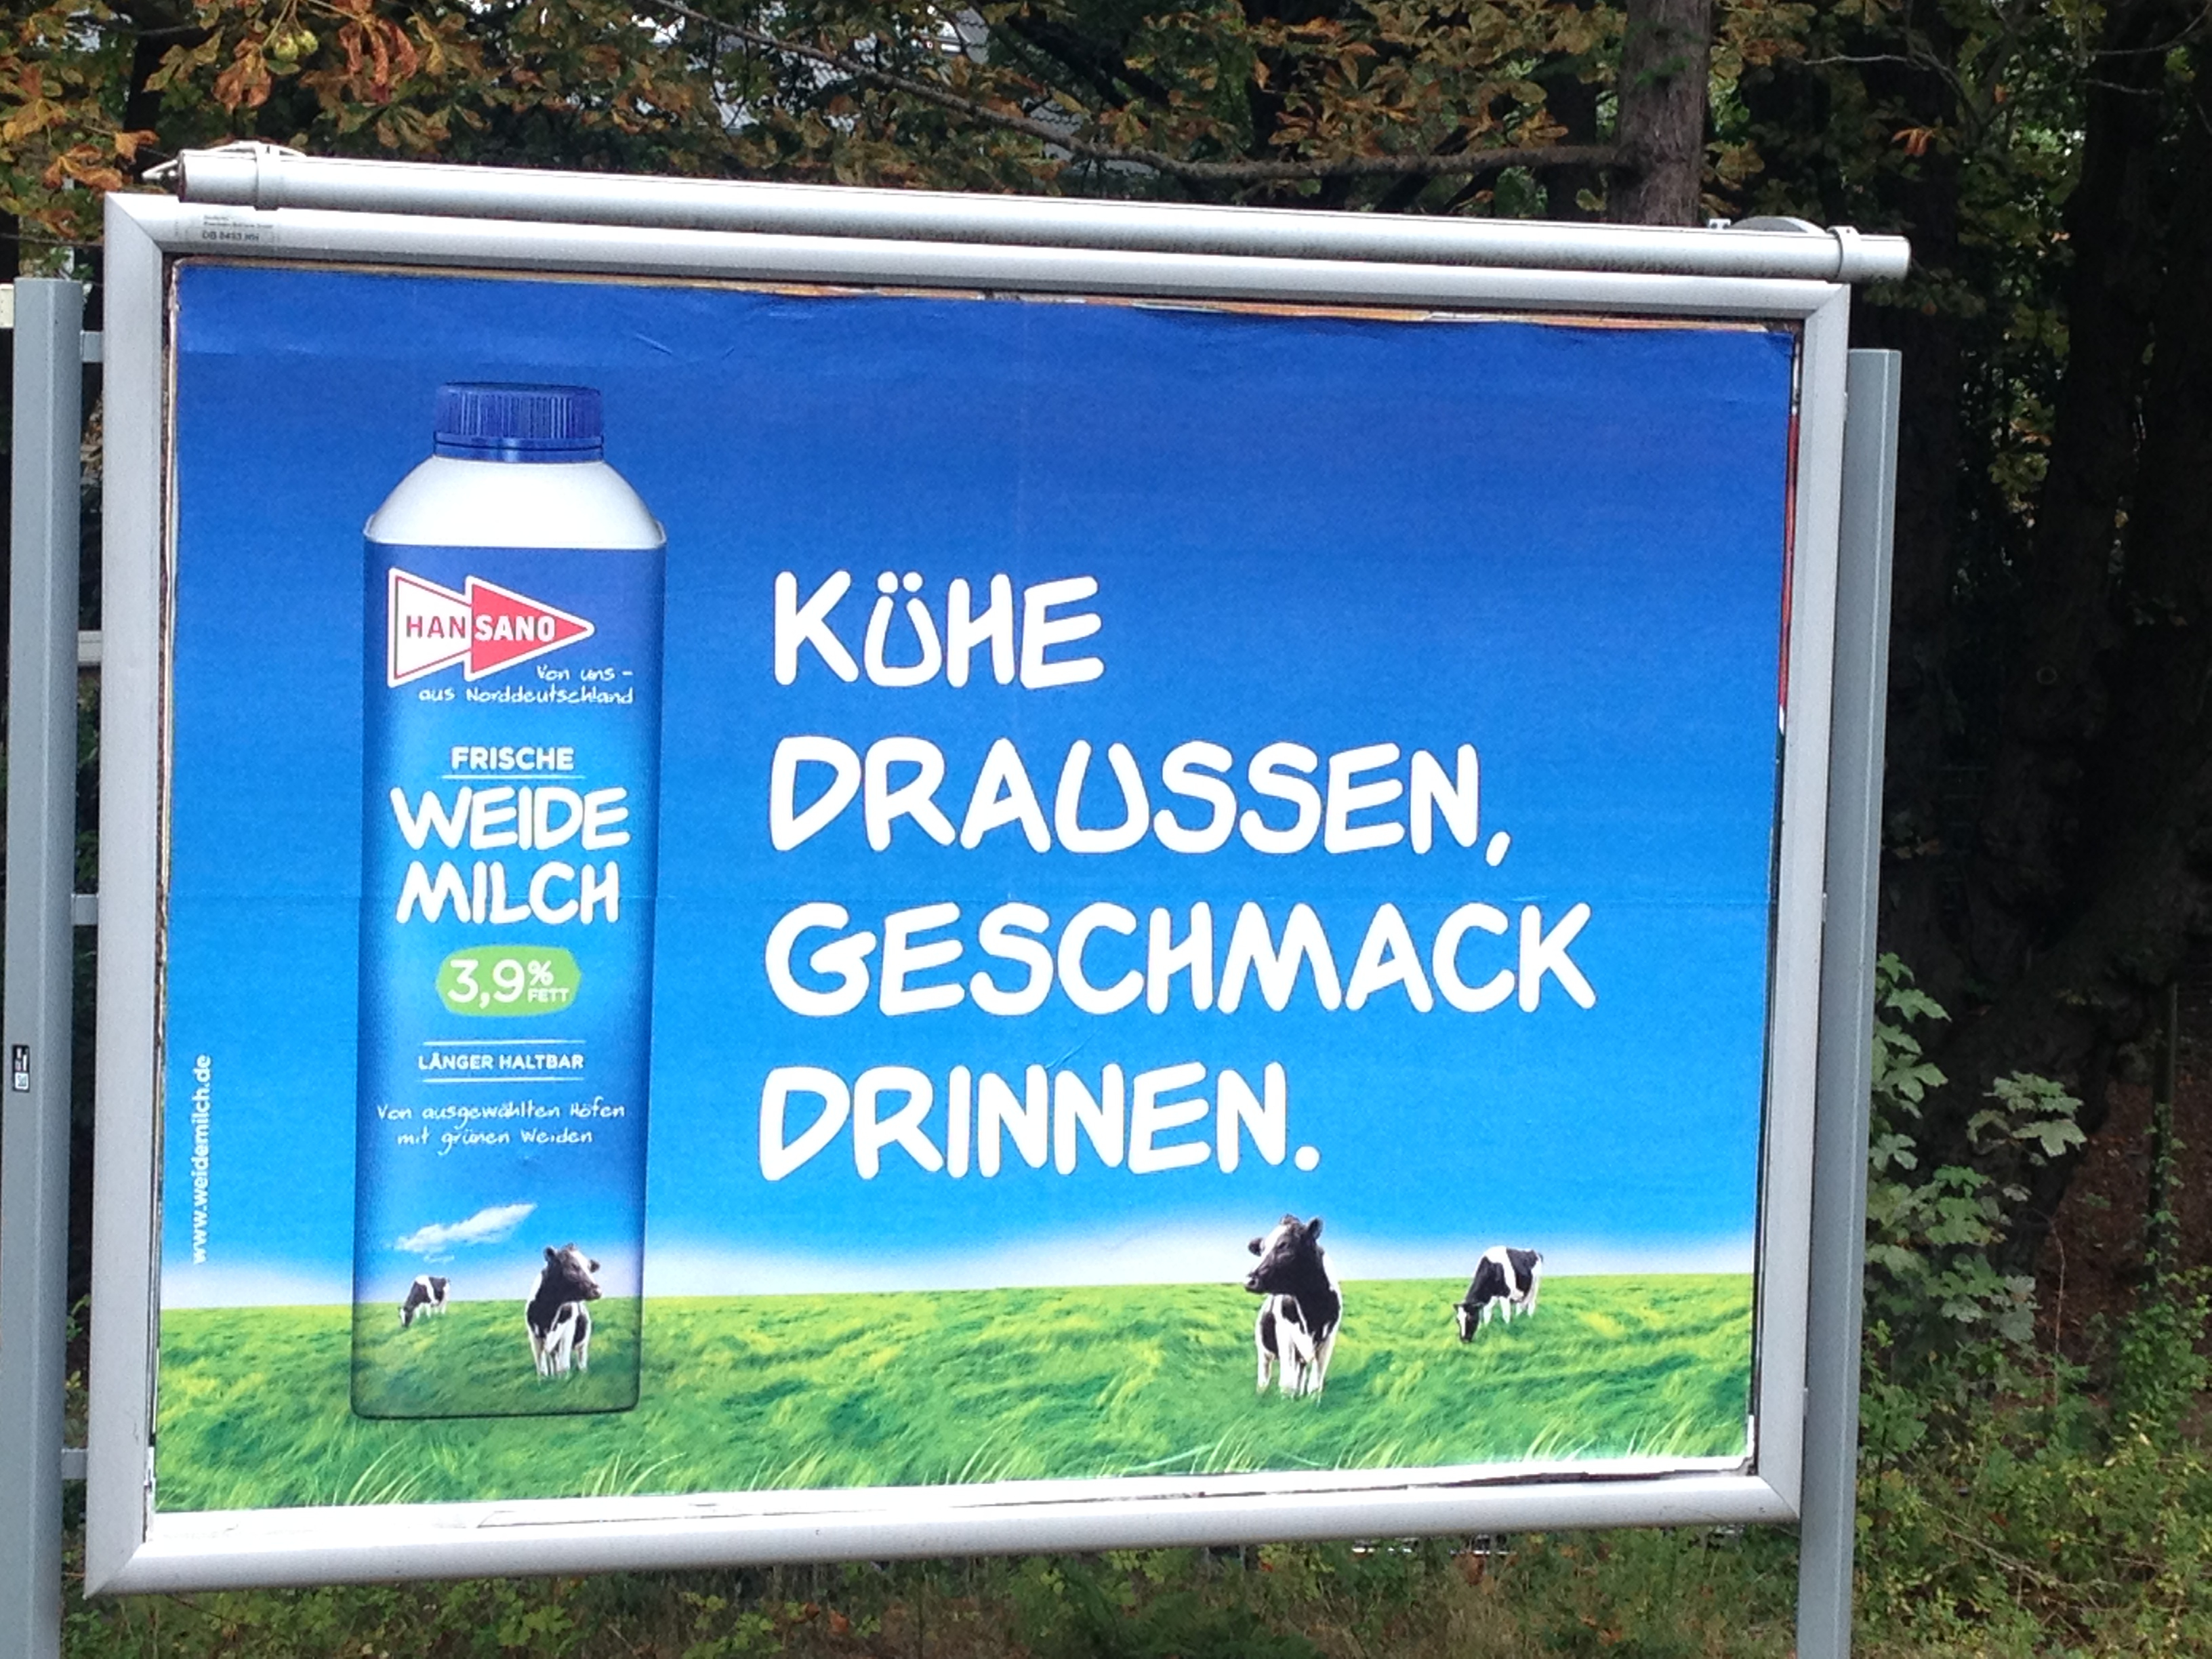 Plakatwerbung "Kühe Draussen, Geschmack Drinnen." für Hansano